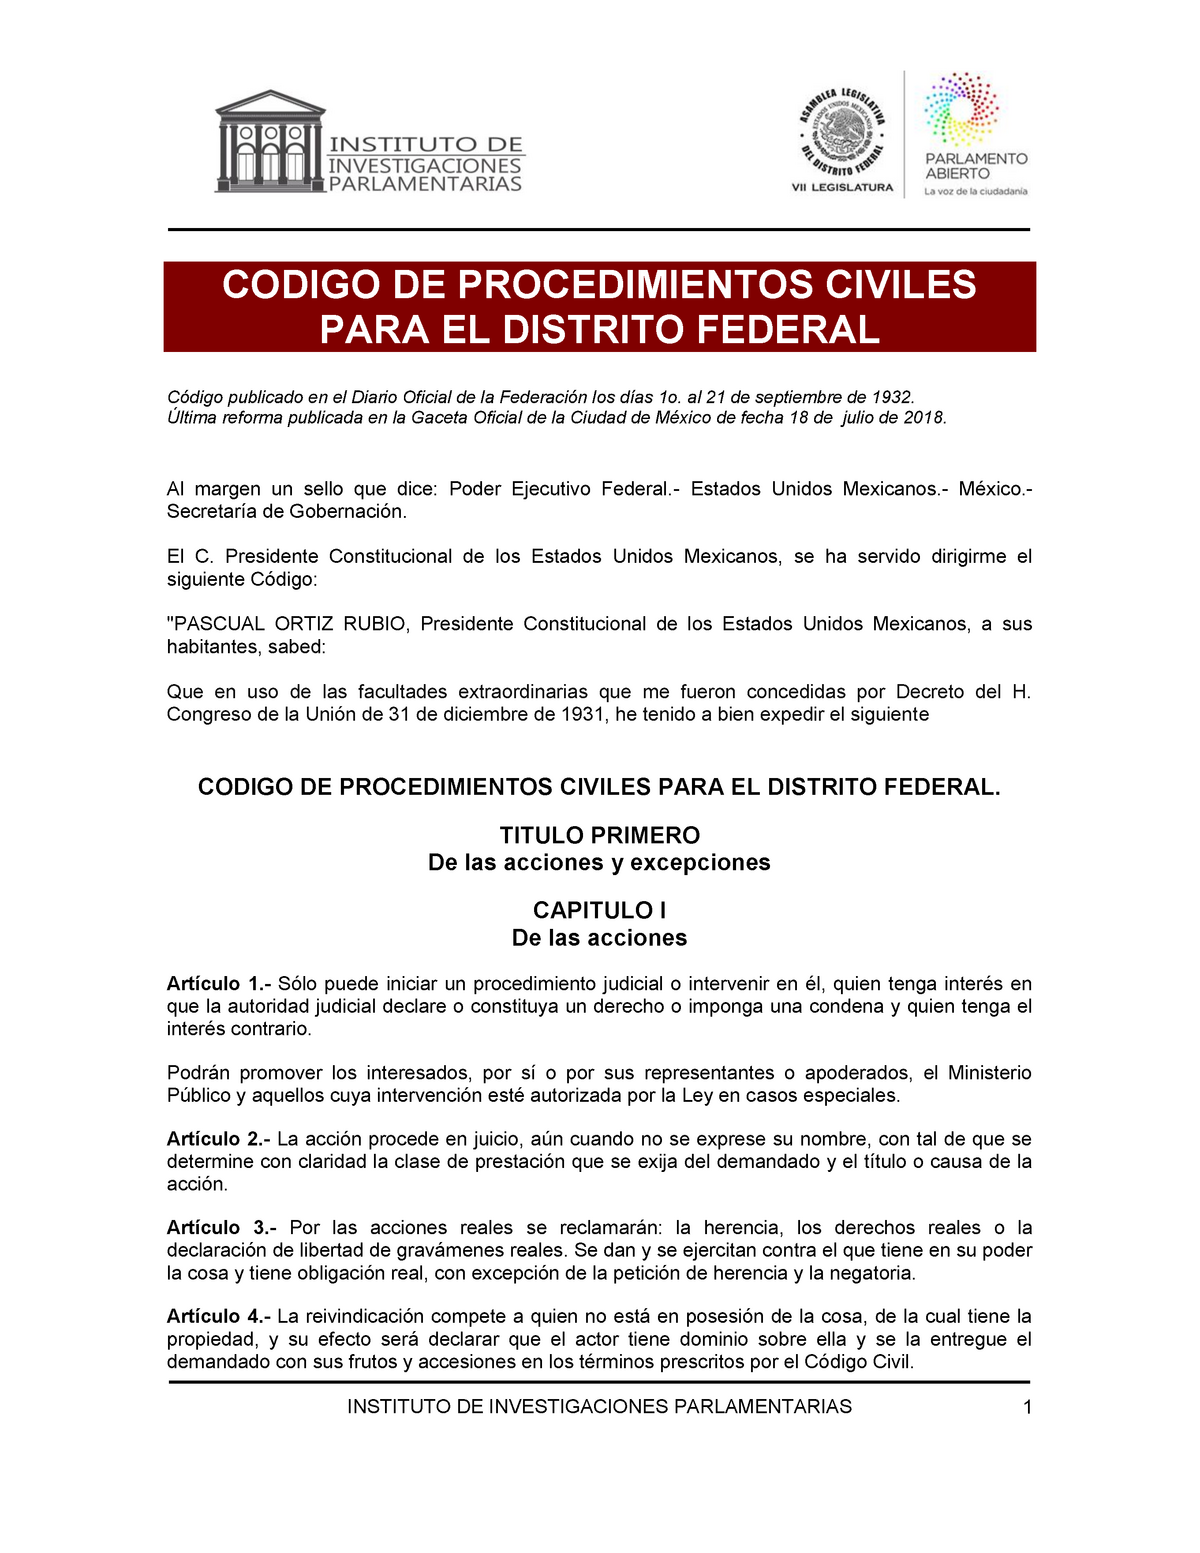 Codigo de procedimientos civiles de la CDMX StuDocu